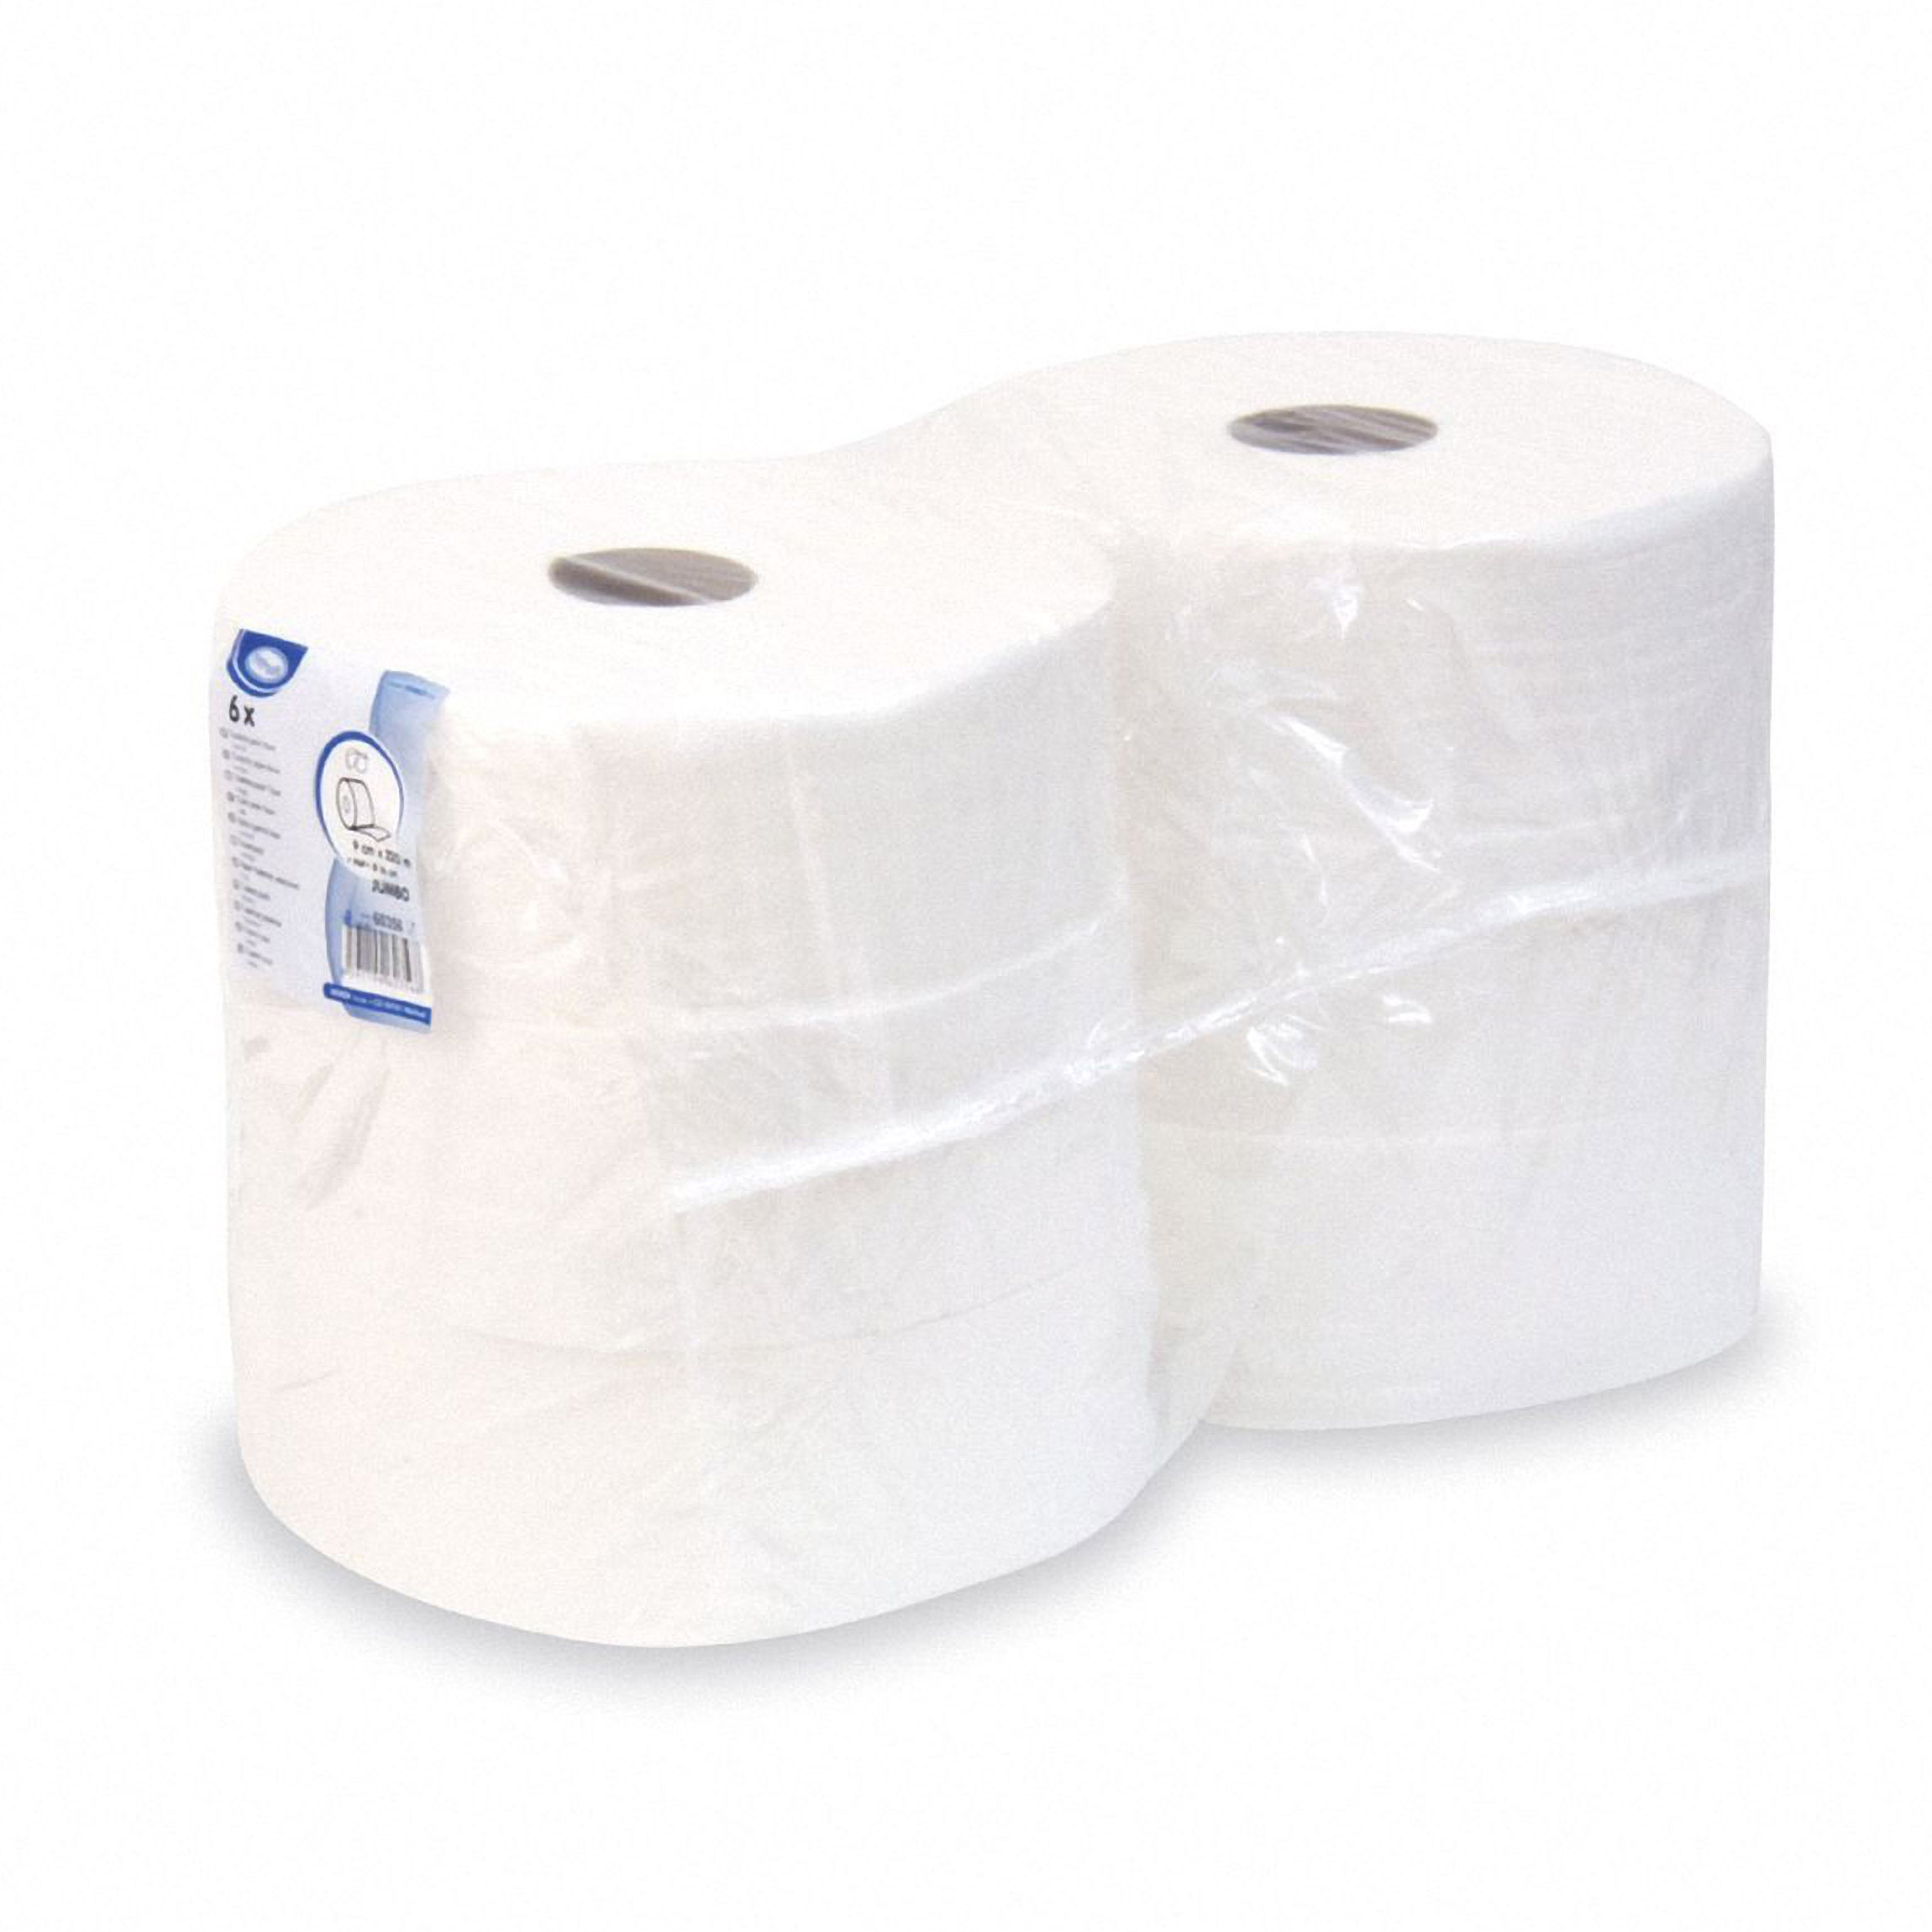 Toilettenpapier perforation Tissue 2-lagig Ø 25cm 240m Klopapier weiß,  6 Stk.